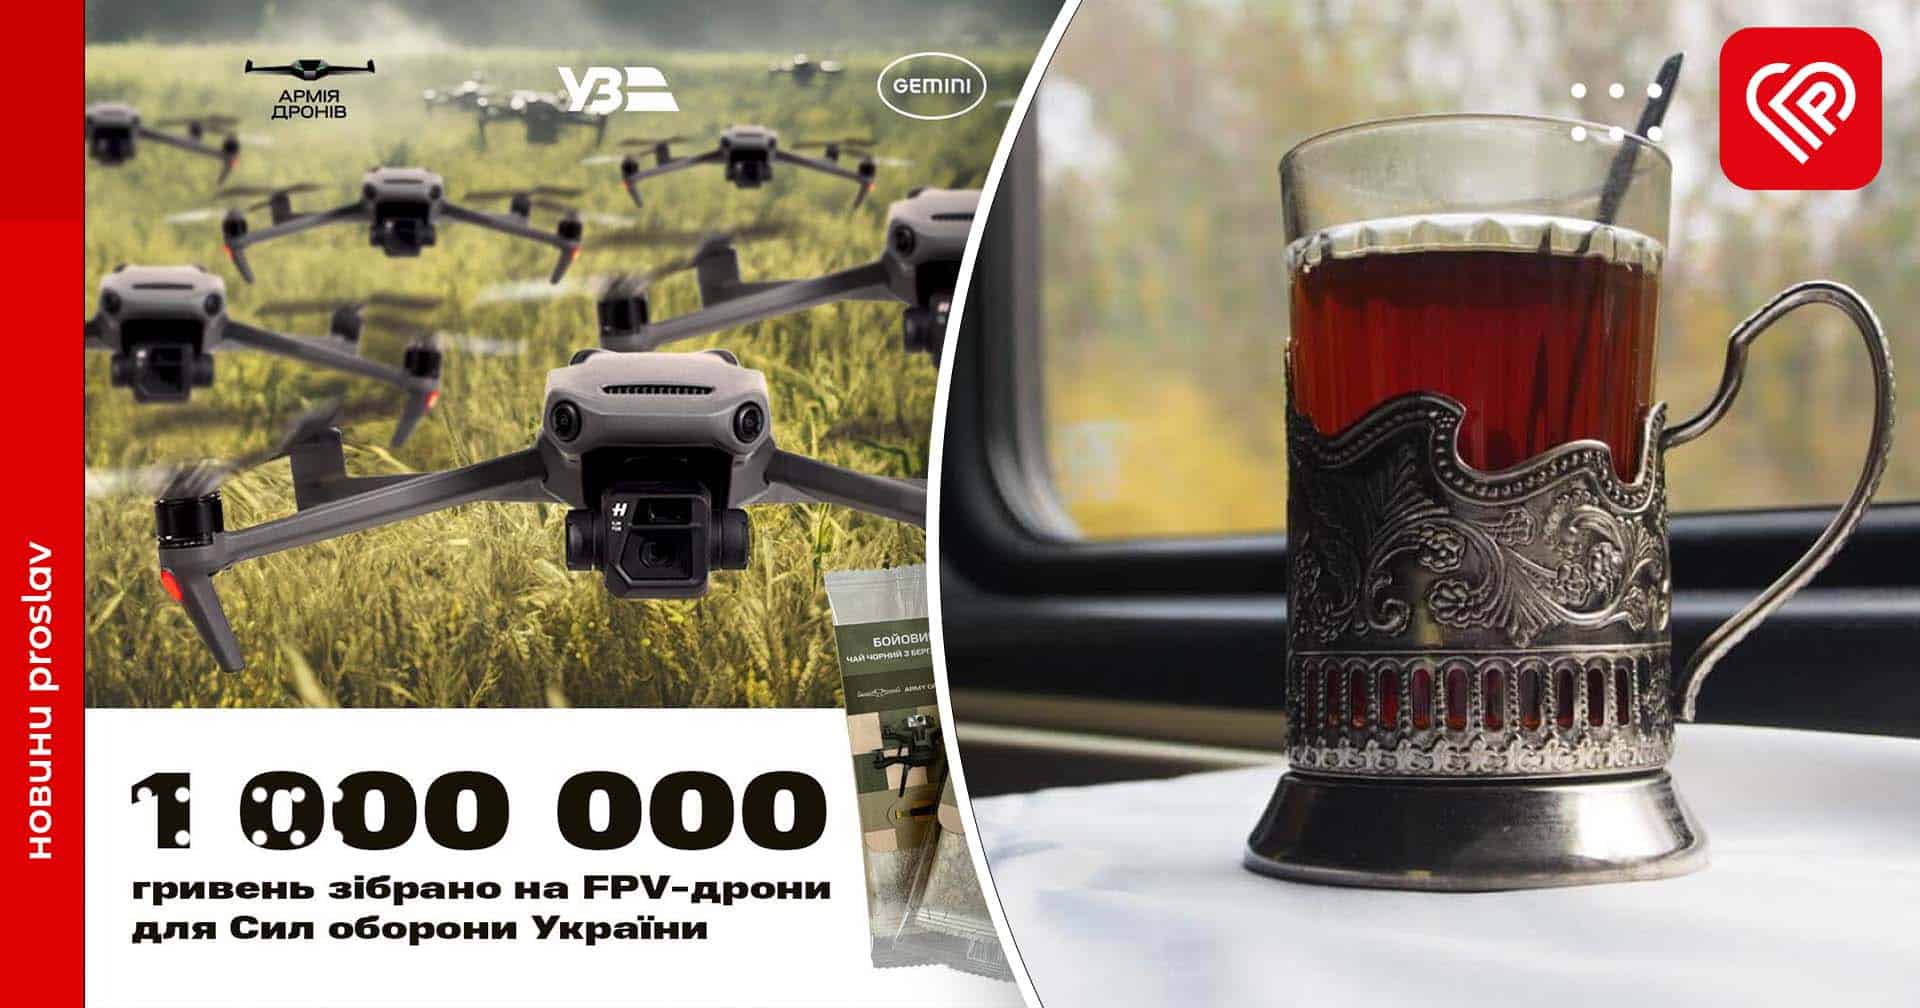 Придбали чай – допомогли Силам оборони: пасажири Укрзалізниці задонатили понад 1 000 000 грн на FPV-дрони «Грім»